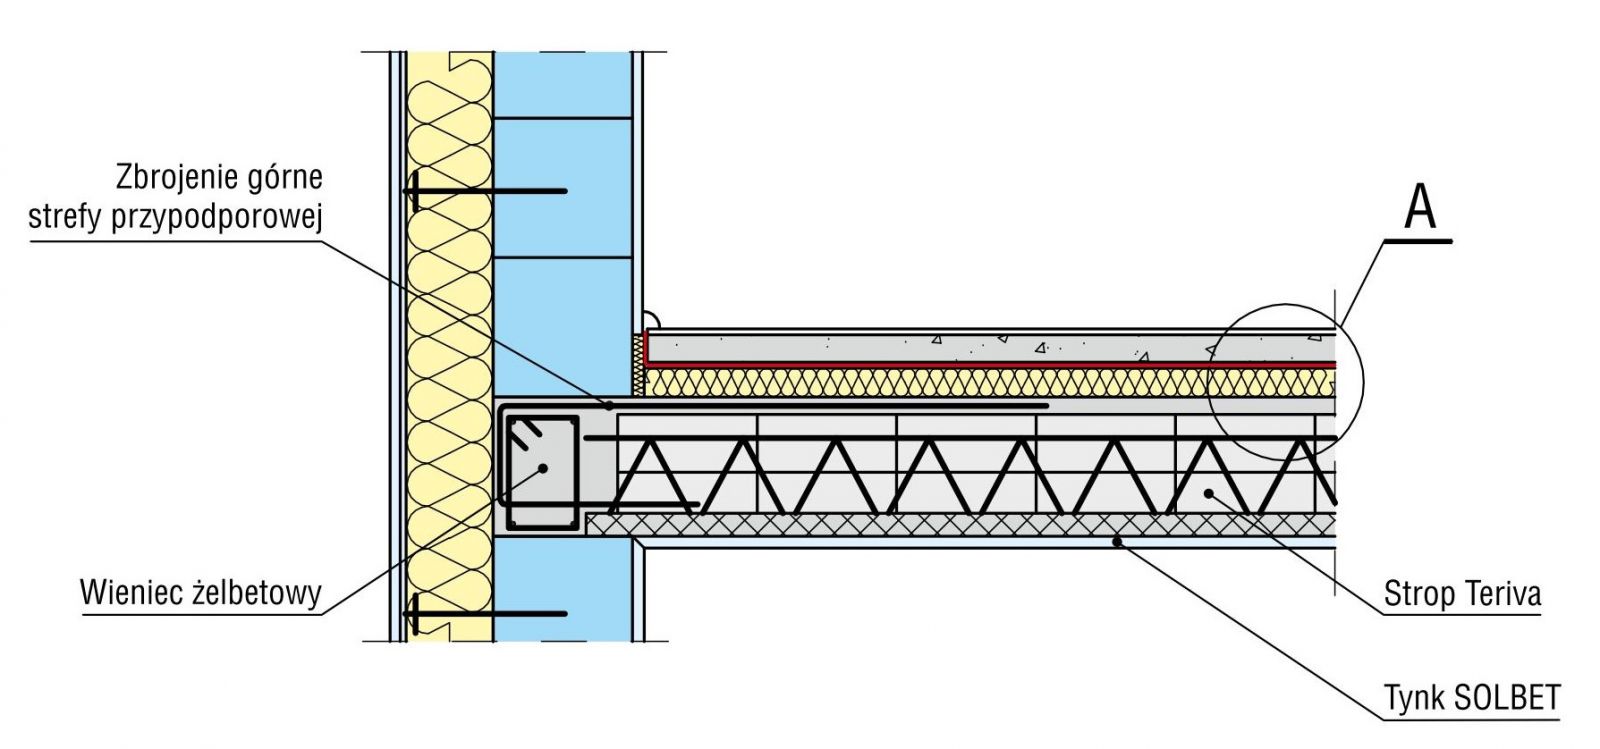 Przykład rozwiązania oparcia stropu gęstożebrowego bezpośrednio na ścianach, ze zbrojeniem górnym strefy przypodporowej (rys. SOLBET)